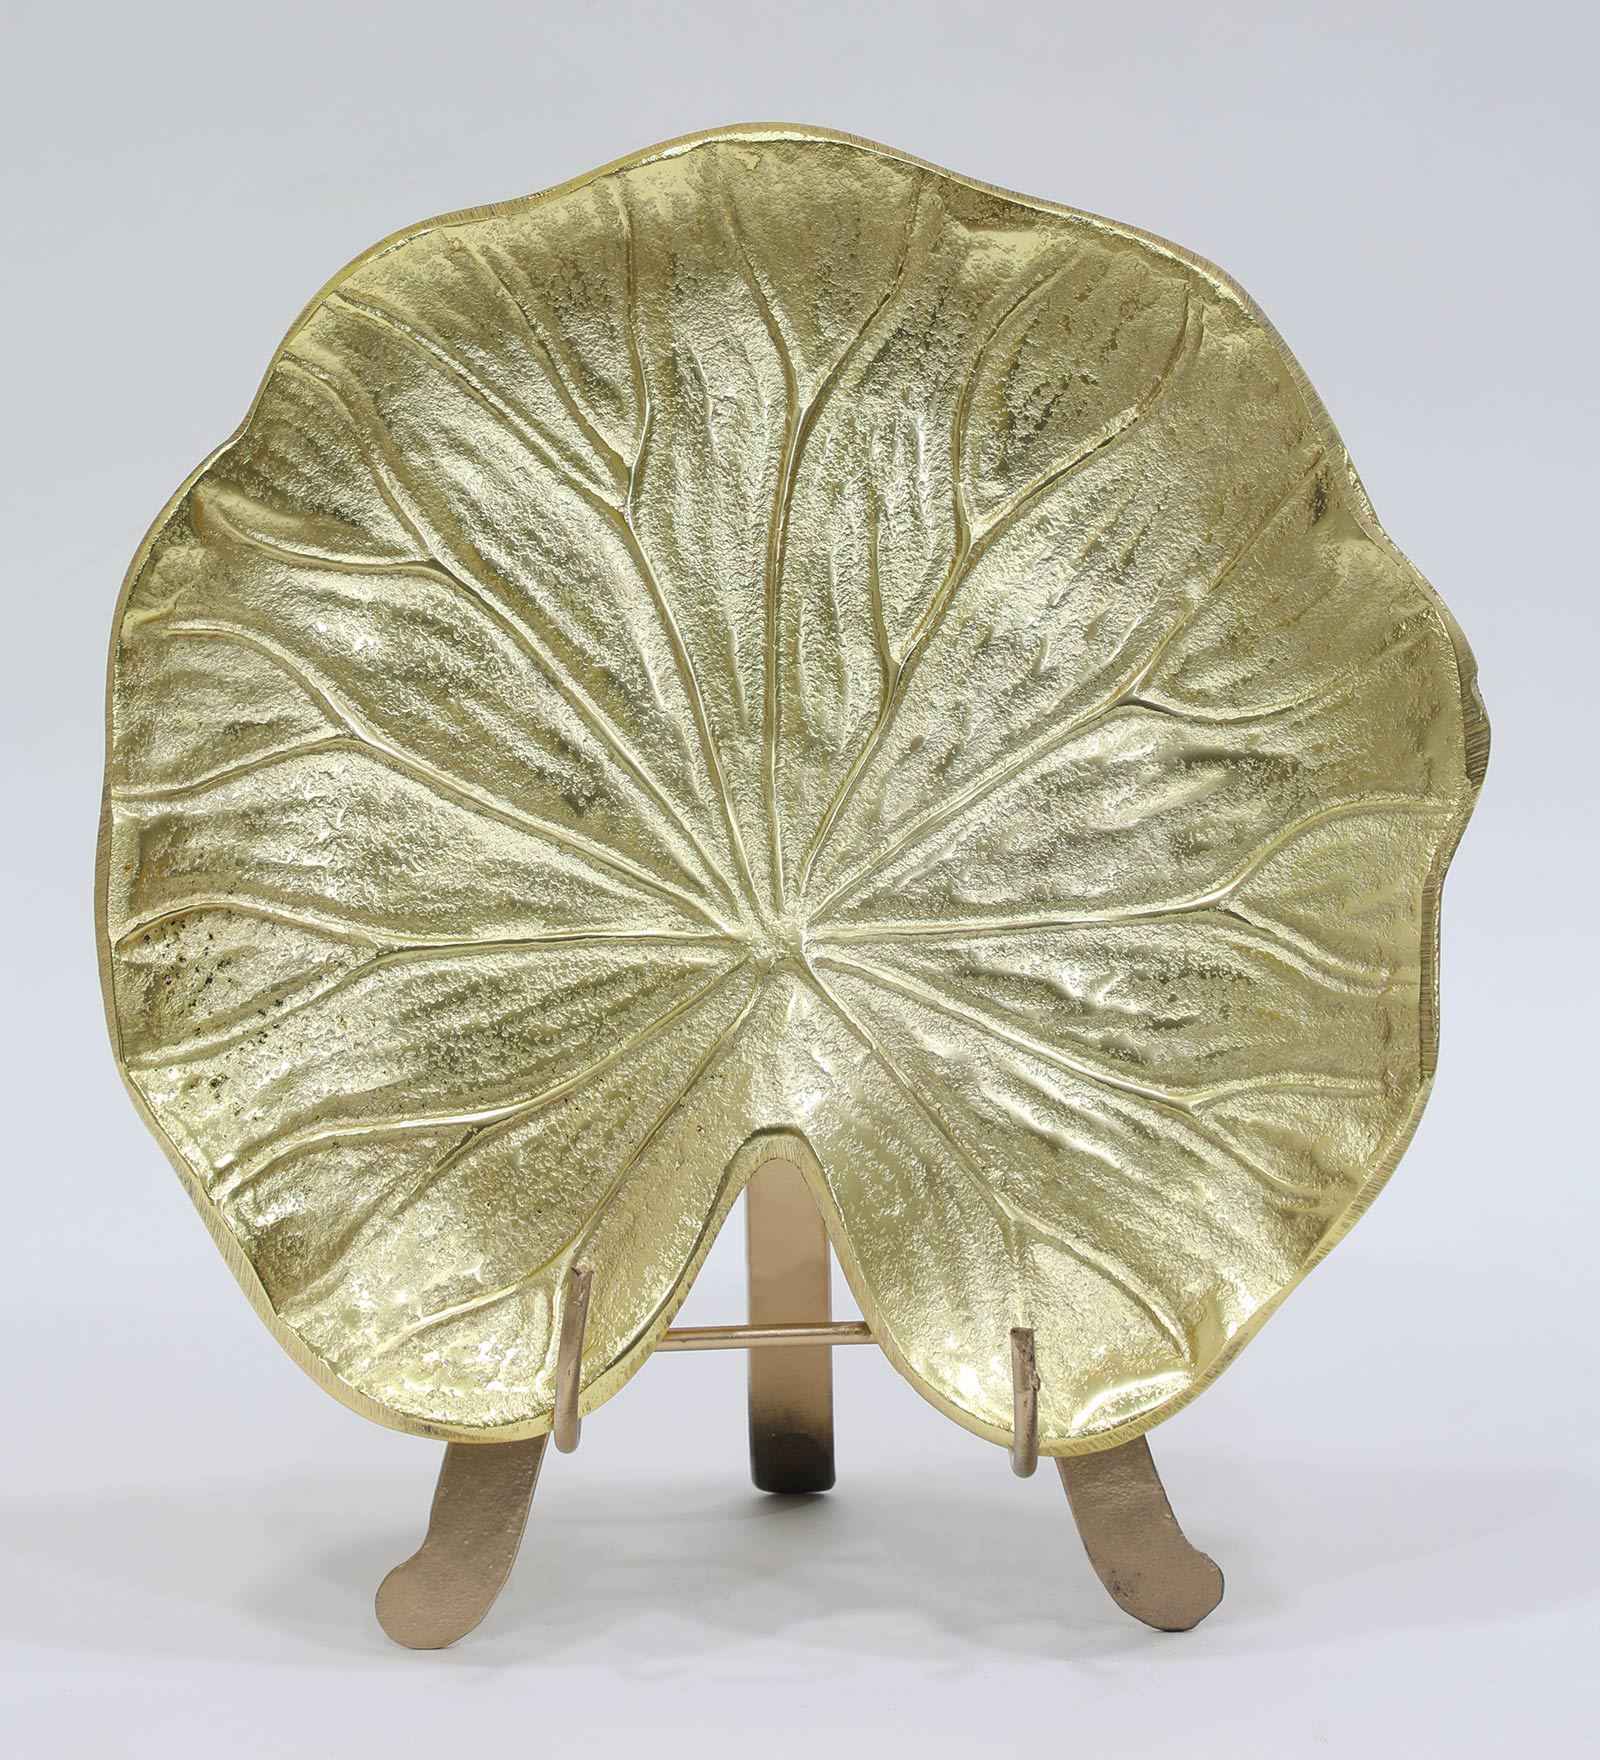 Brass antique table décor